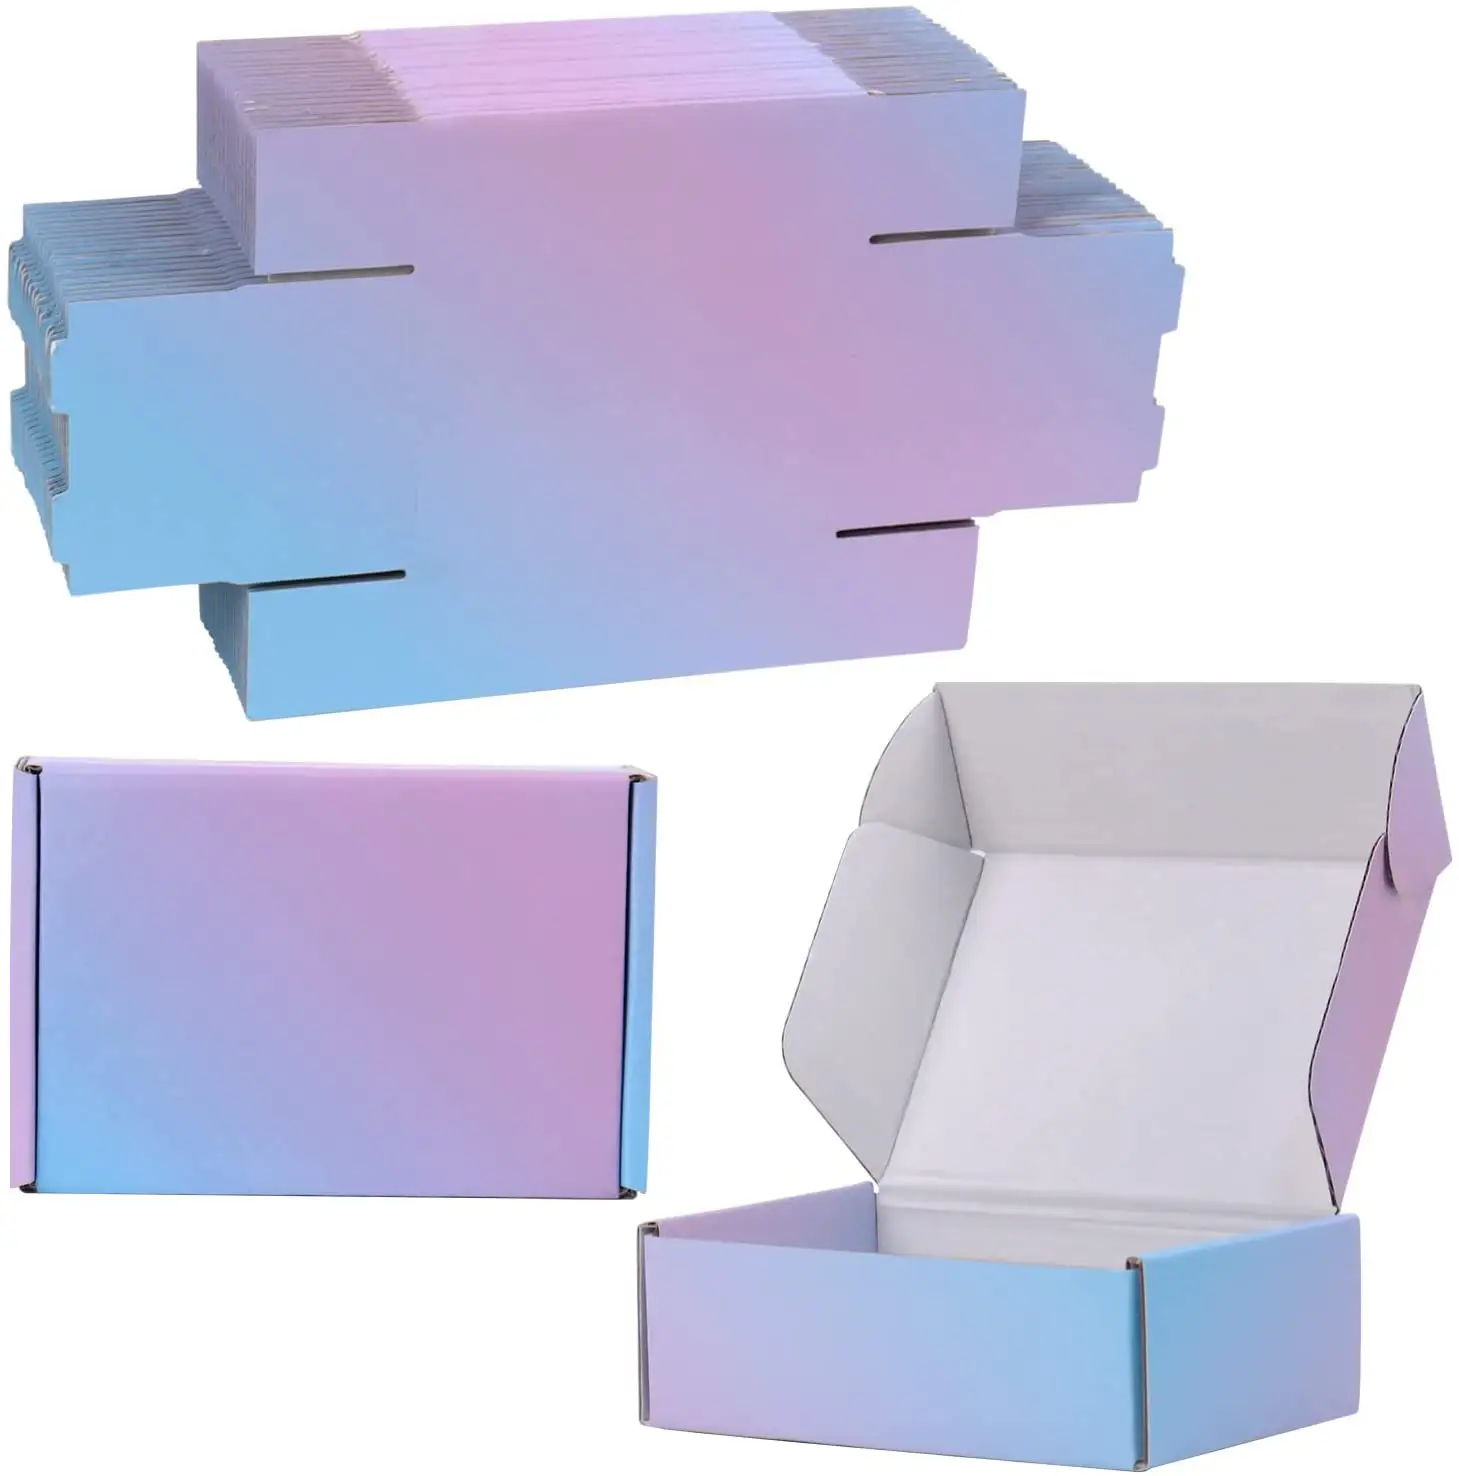 6x4x2 인치 다채로운 물결 모양 우송 상자 30 팩 작은 마분지 포장 상자 우송자 선물 그라디언트 주문 인쇄